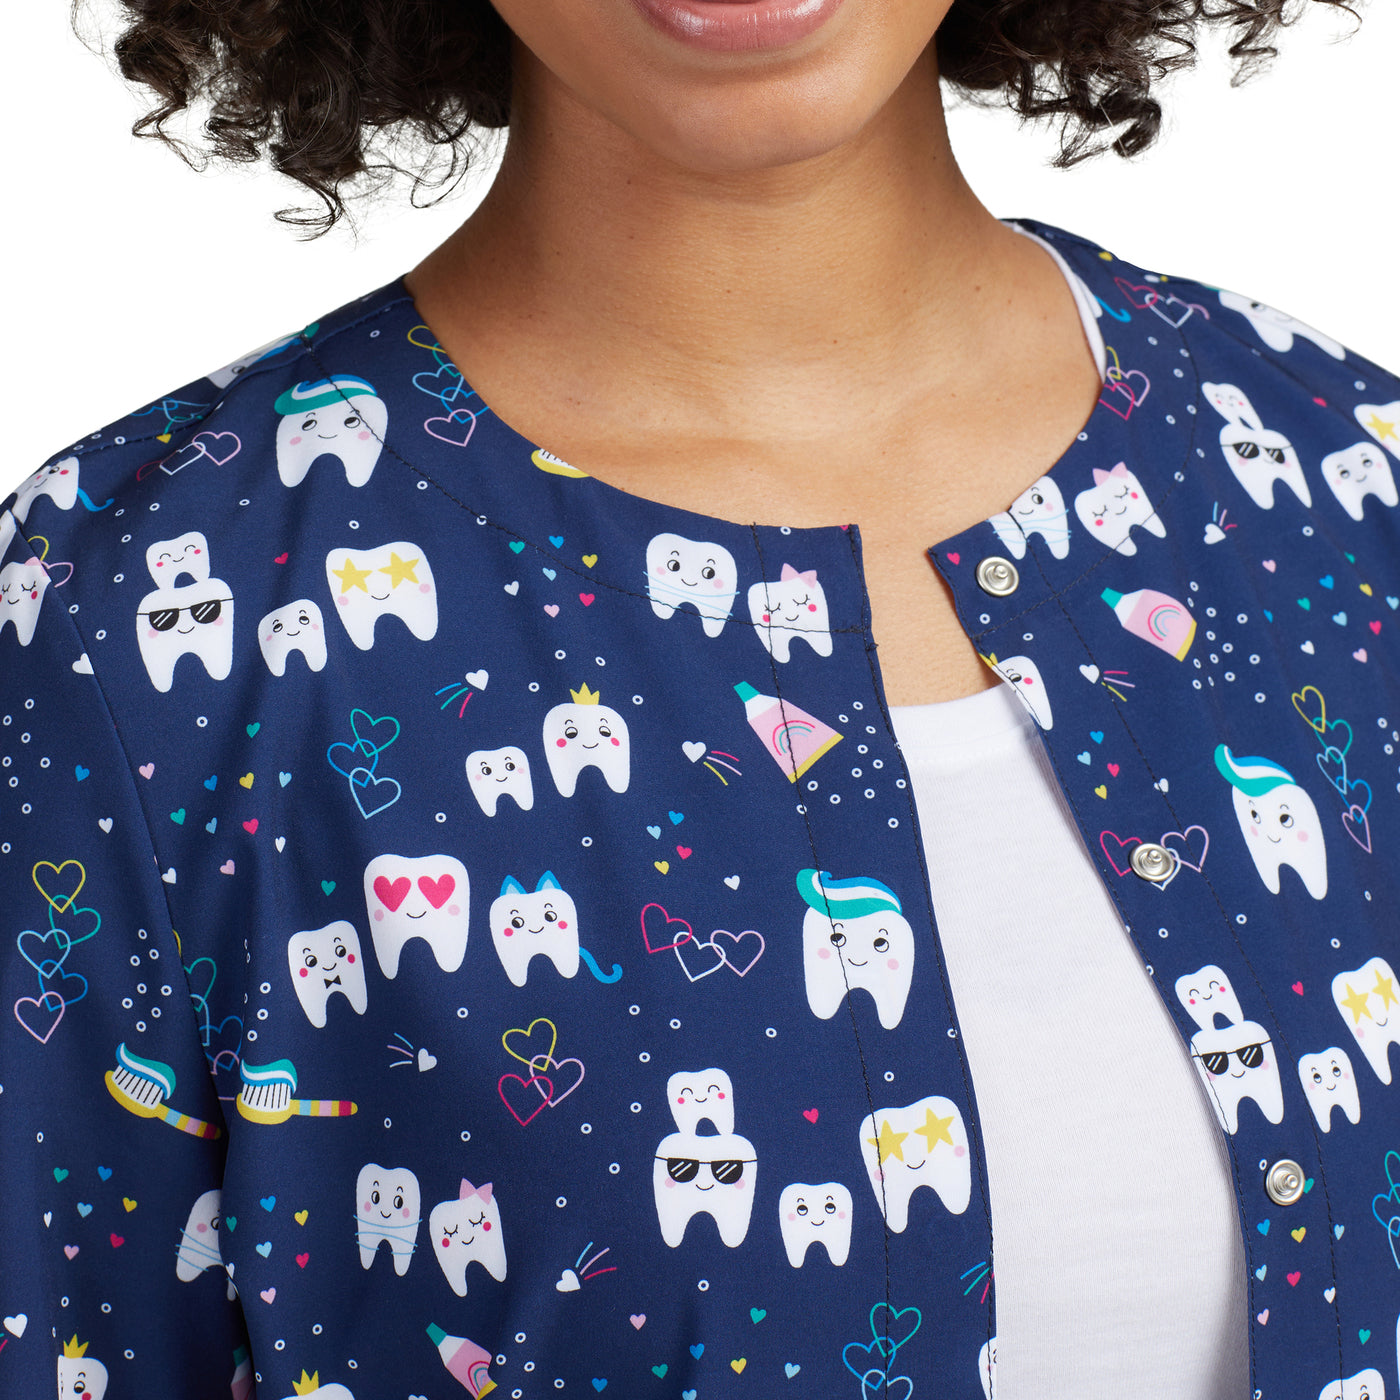 WJ708 White Cross Dental Inspired Printed Scrub Jacket for Women